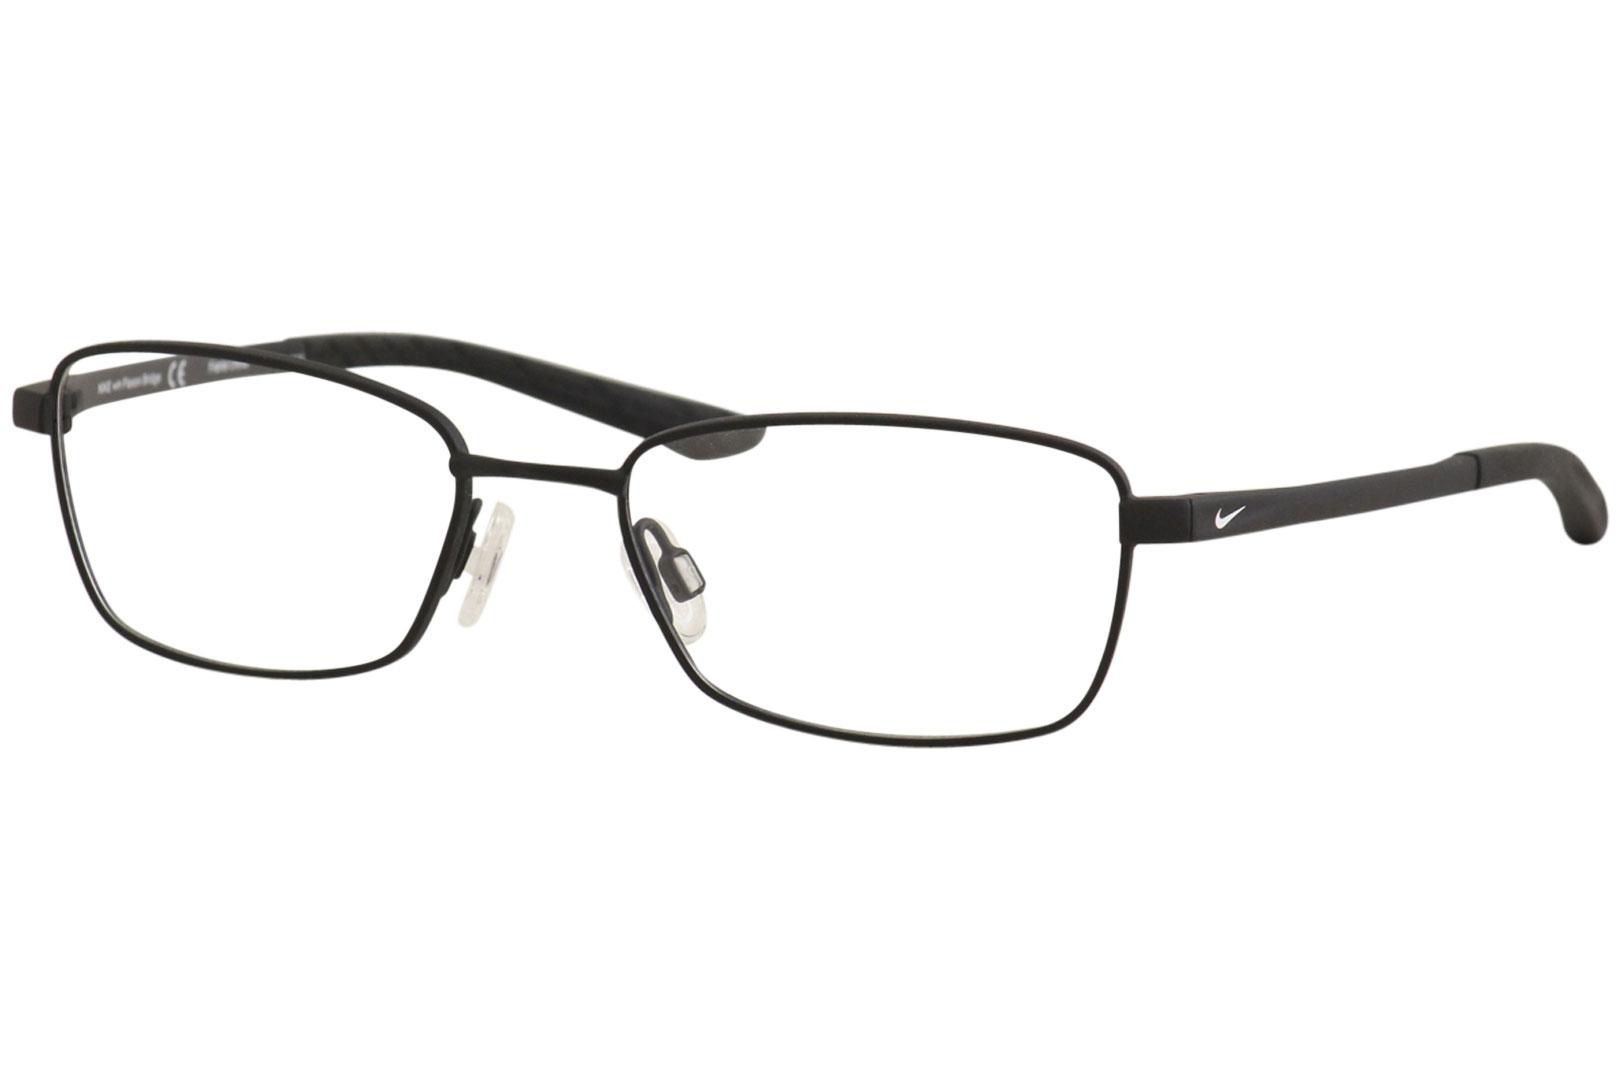 Nike Men S Eyeglasses Flexon 4642 001 Satin Black Full Rim Optical Frame 49mm